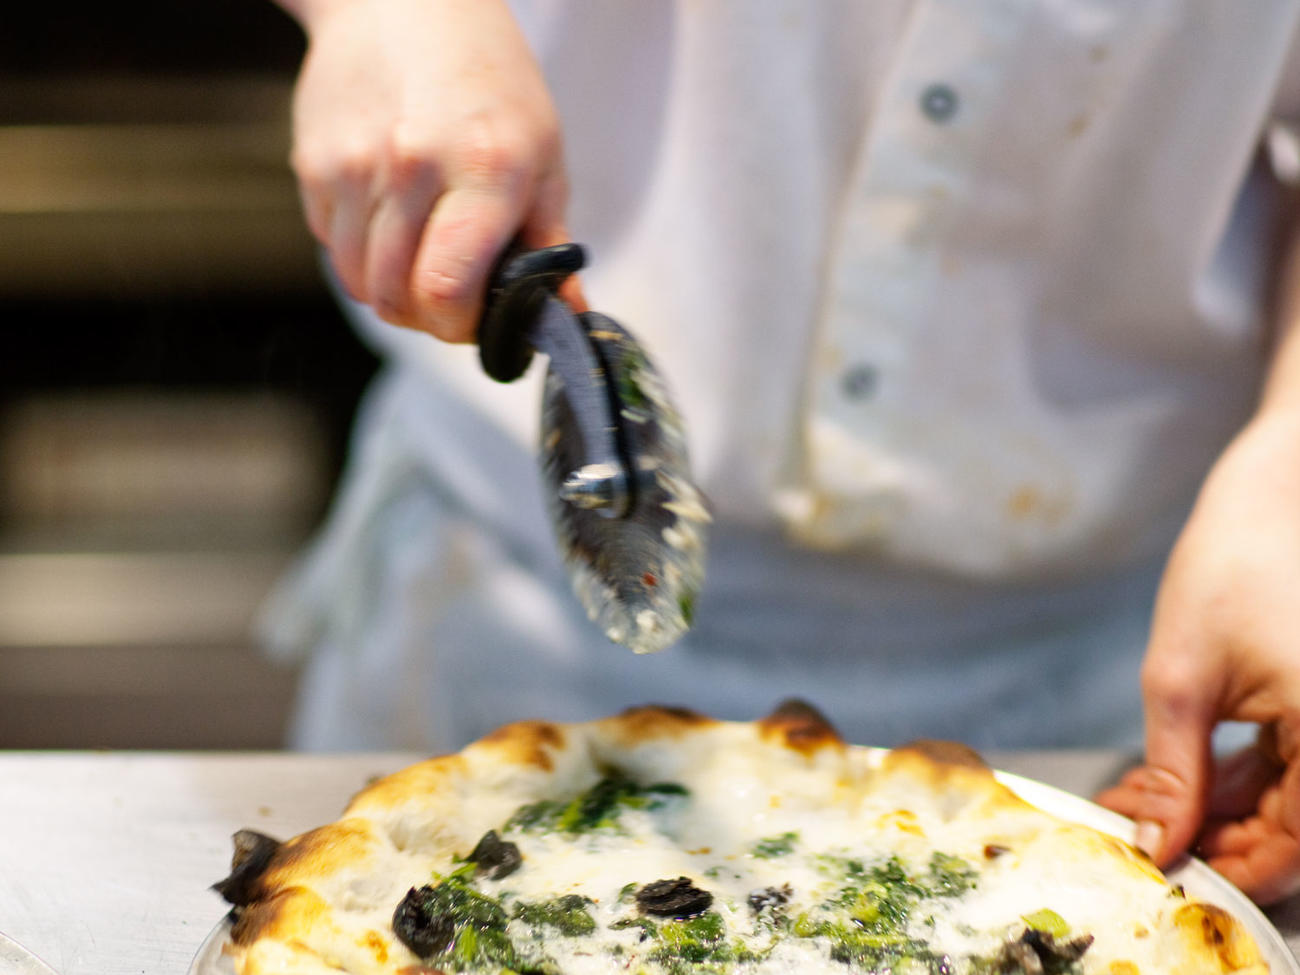 Outdoor Pizza Oven Charred Broccoli Rabe, Pecorino, and Anchovy Pizza Recipe